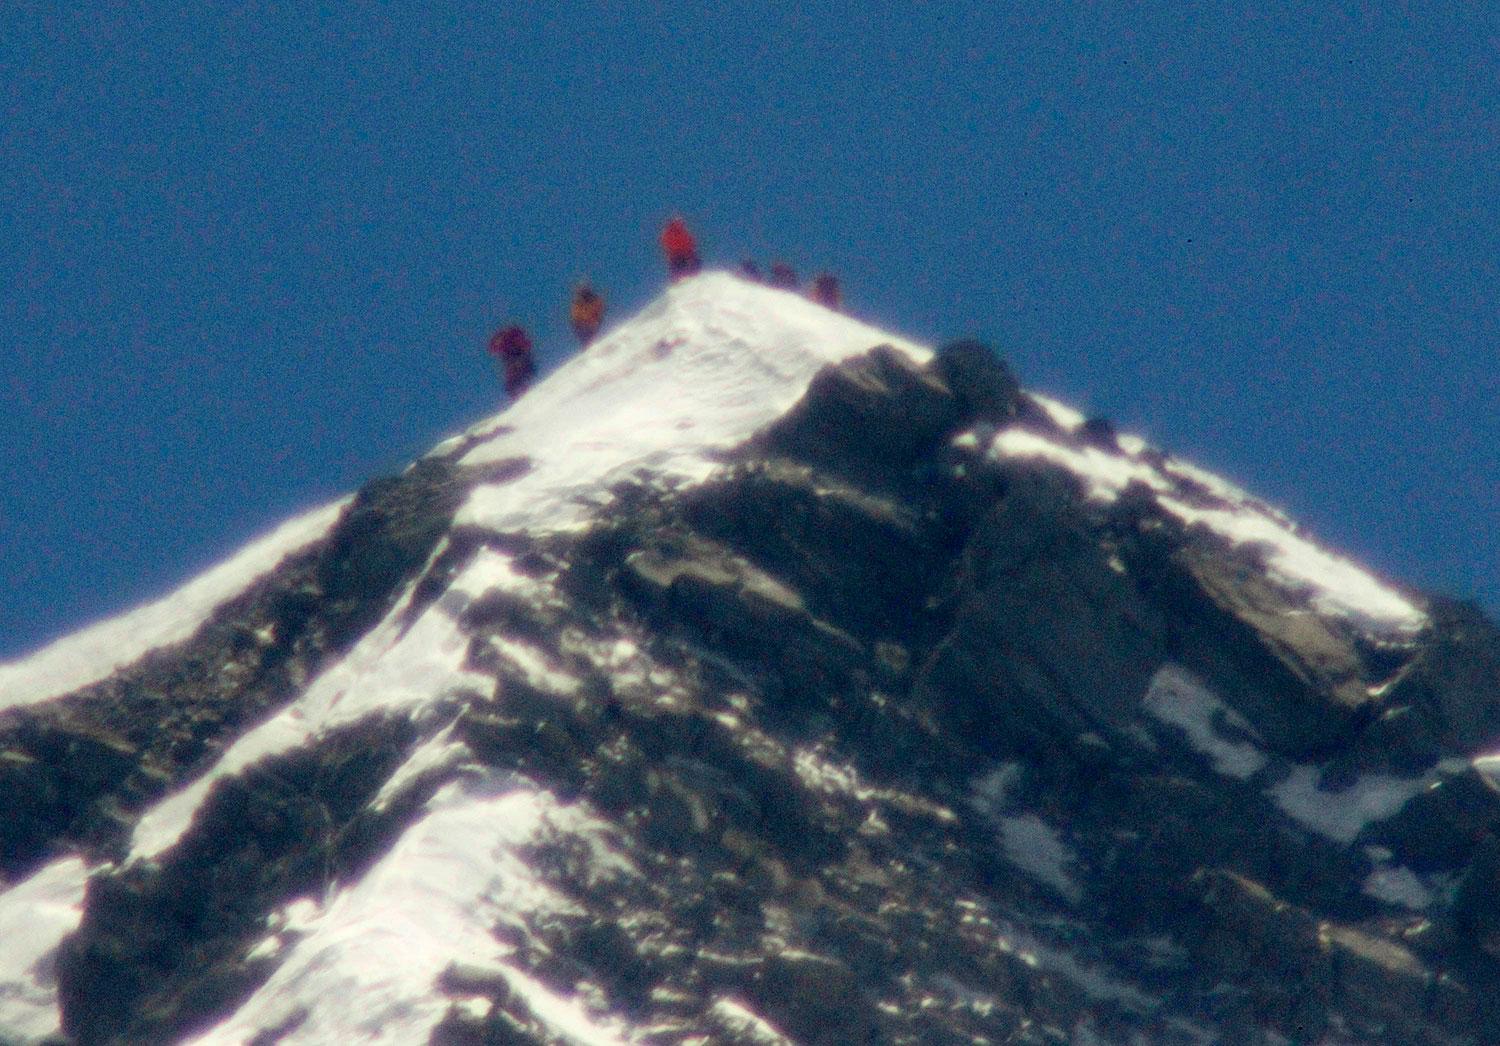 VÄRLDENS HÖGSTA PUNKT Högsta toppen på Mount Everest i Himalaya når 8848 meter över havet.